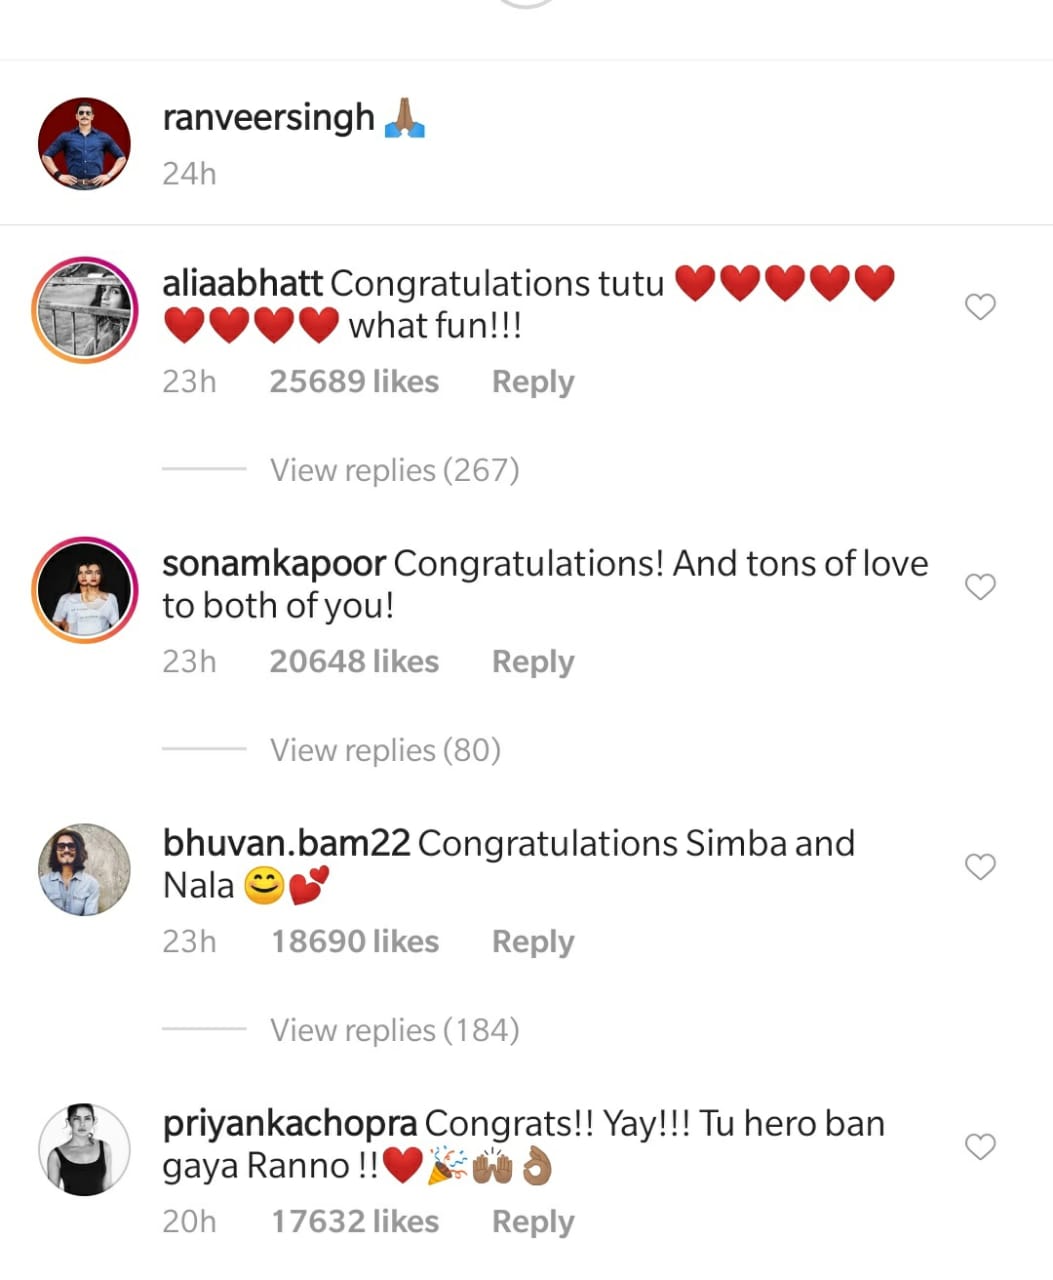 Priyanka Chopra's comment on Ranveer Singh's post